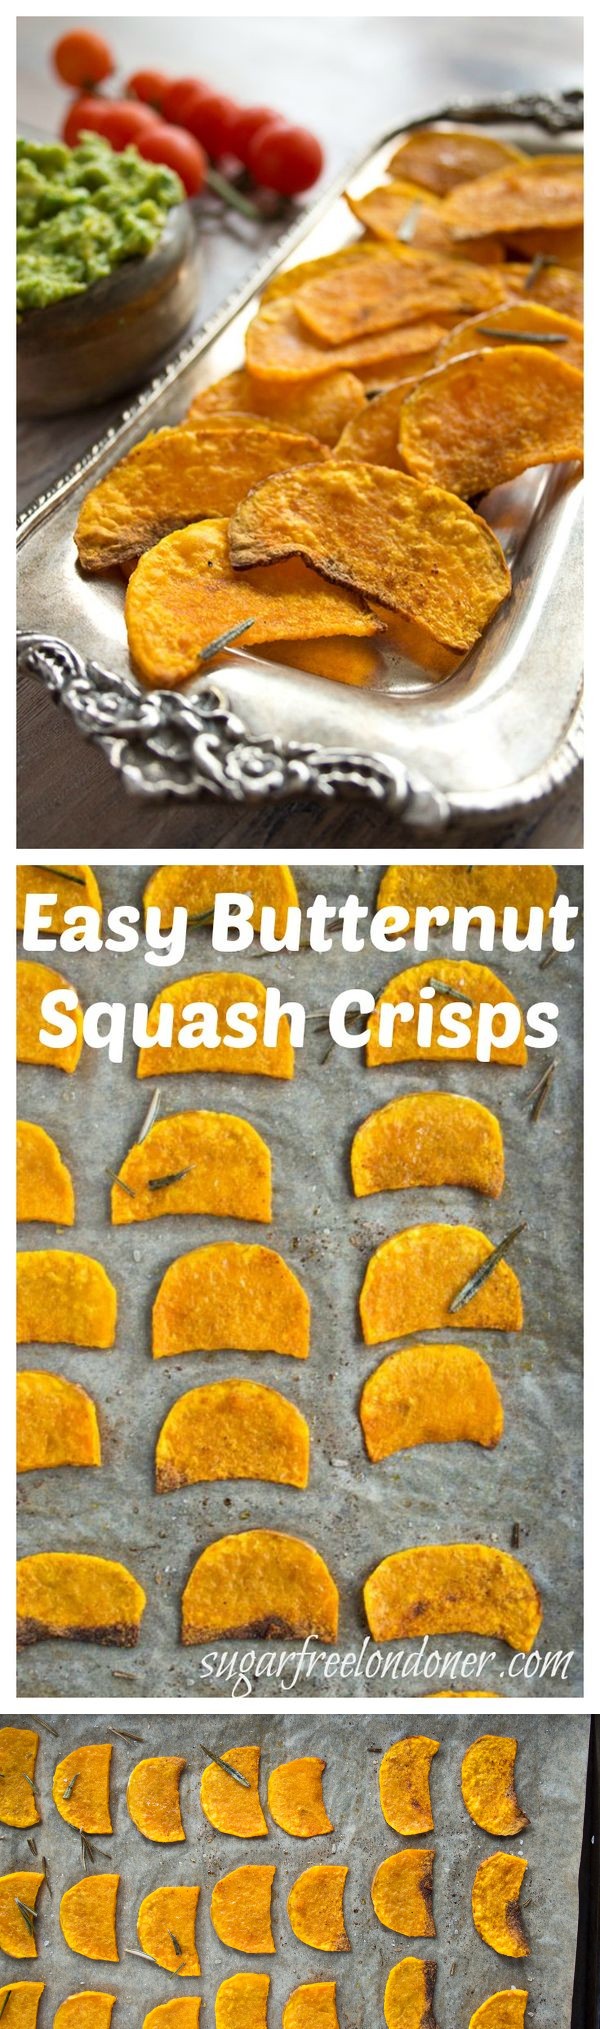 Butternut Squash Crisps